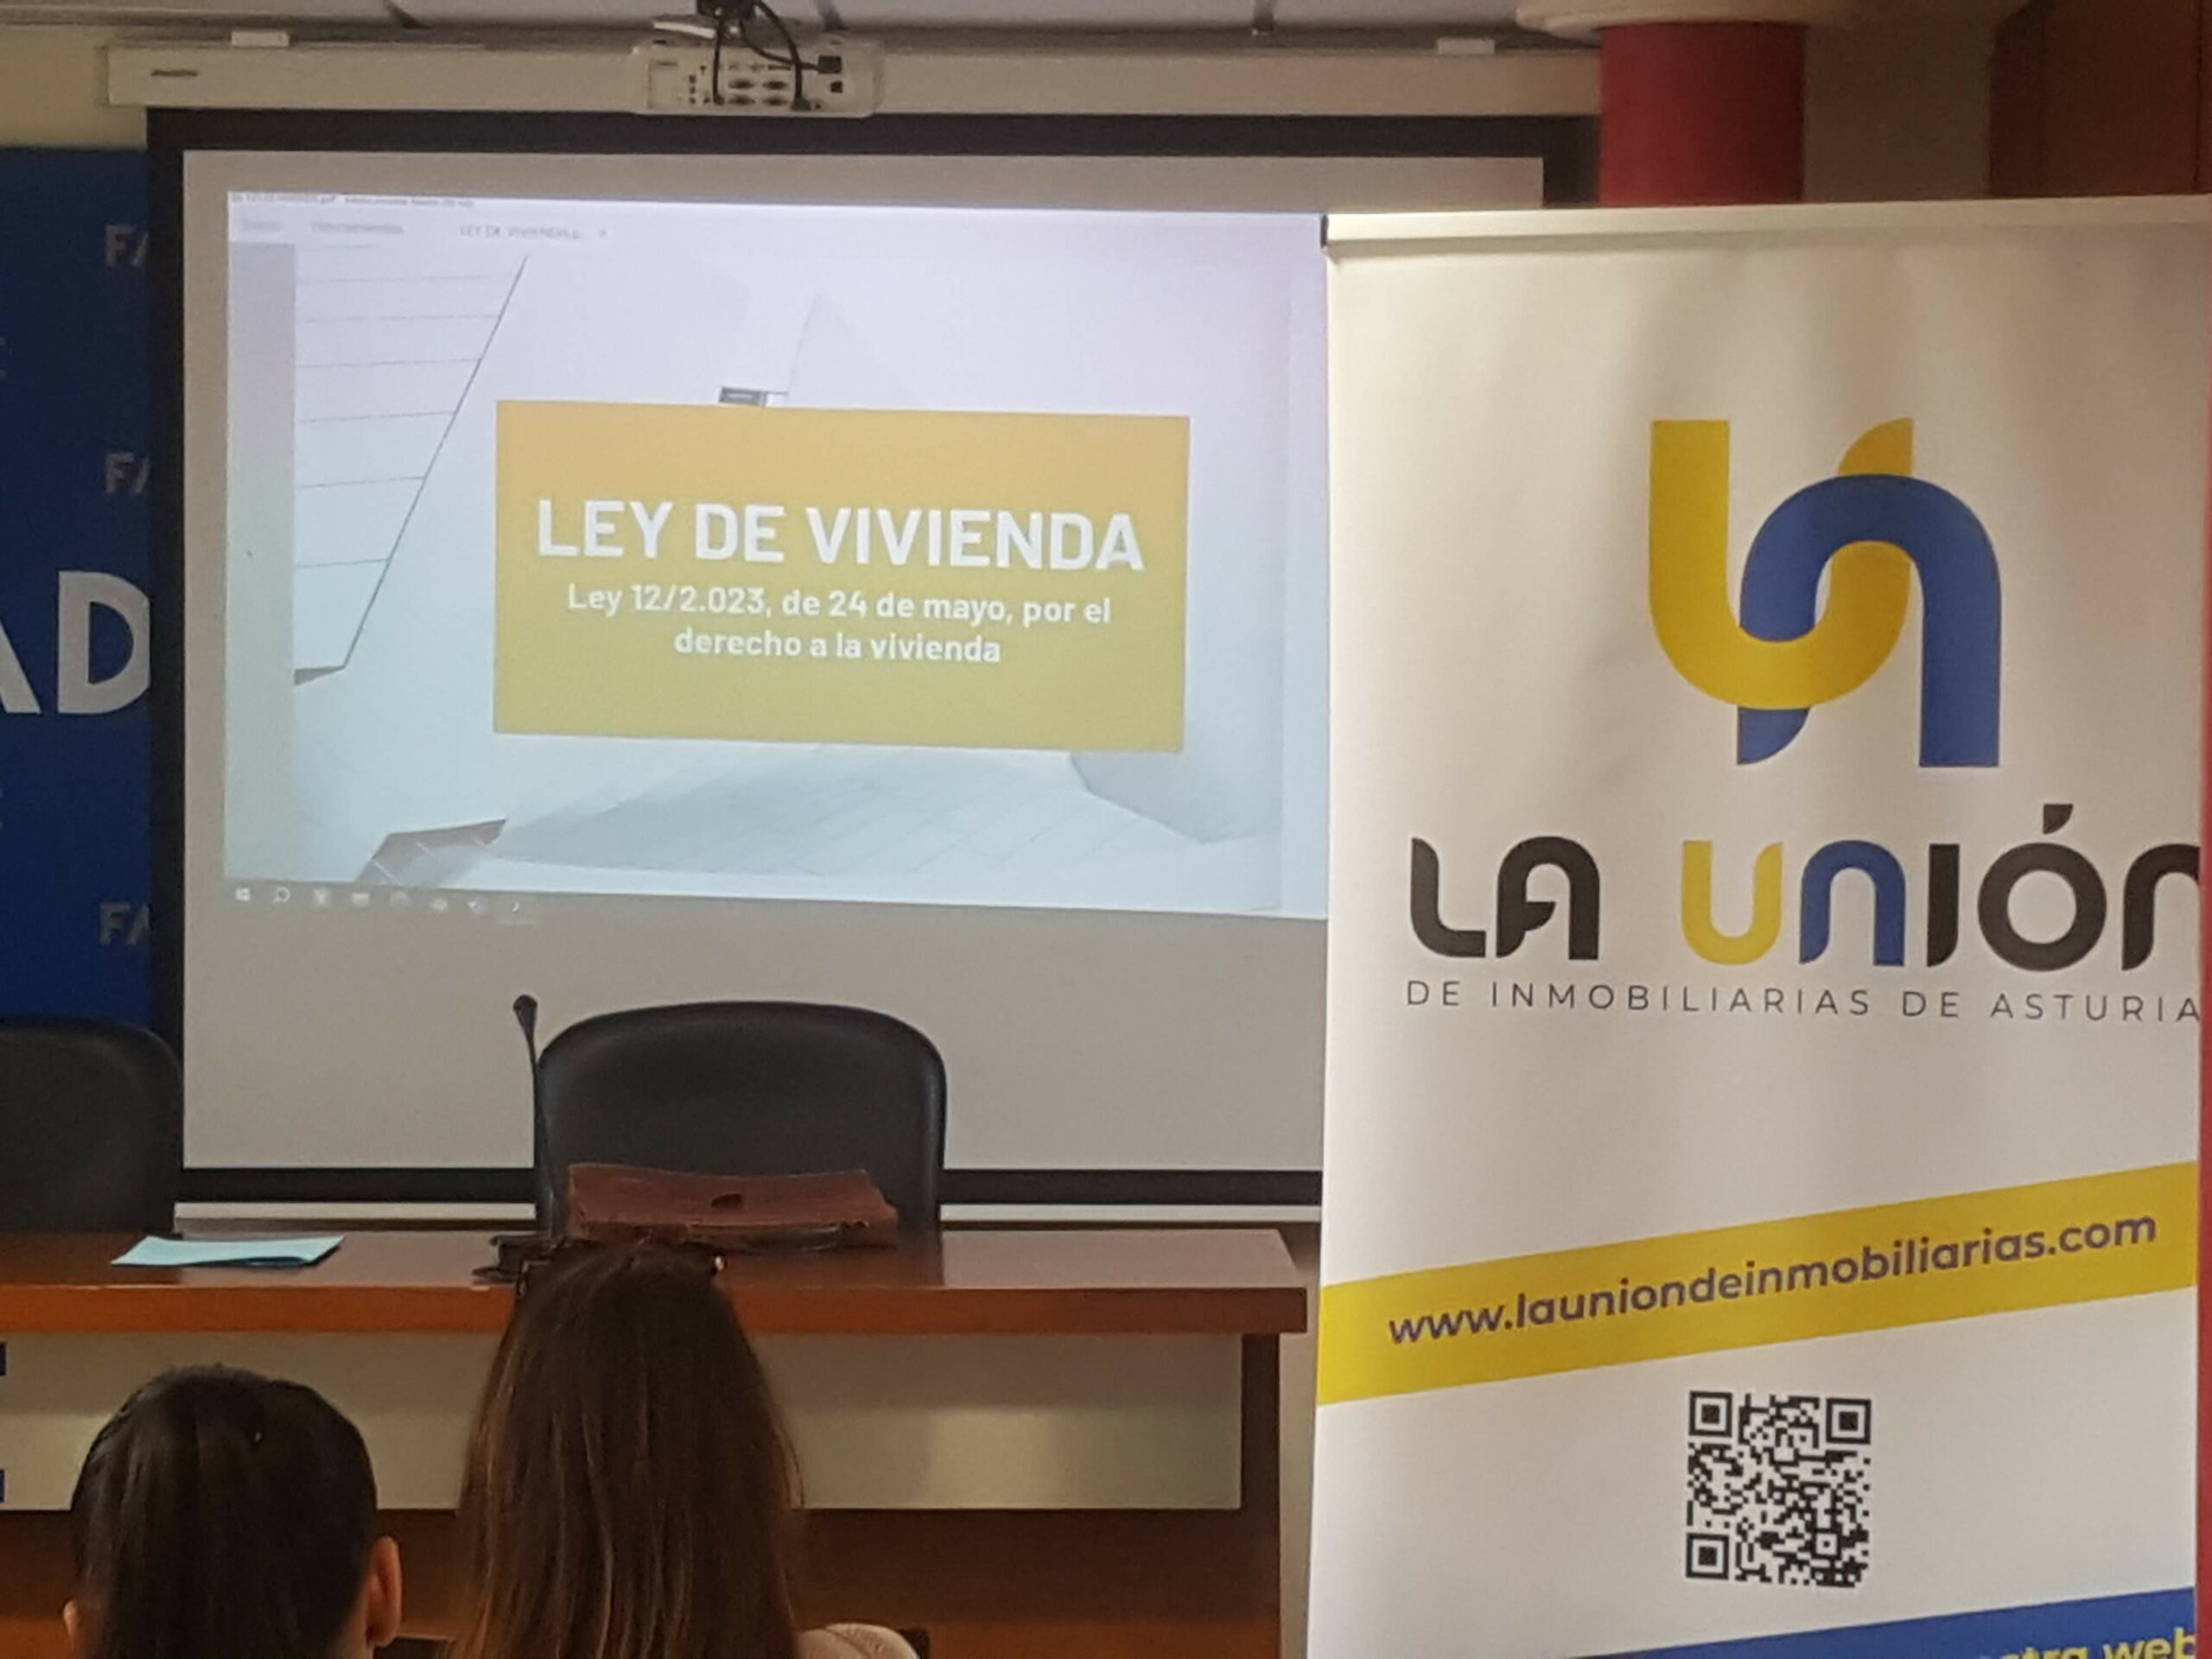 LEY DE VIVIENDA: Jornadas informativas en Oviedo y Gijón 05-06/06/23